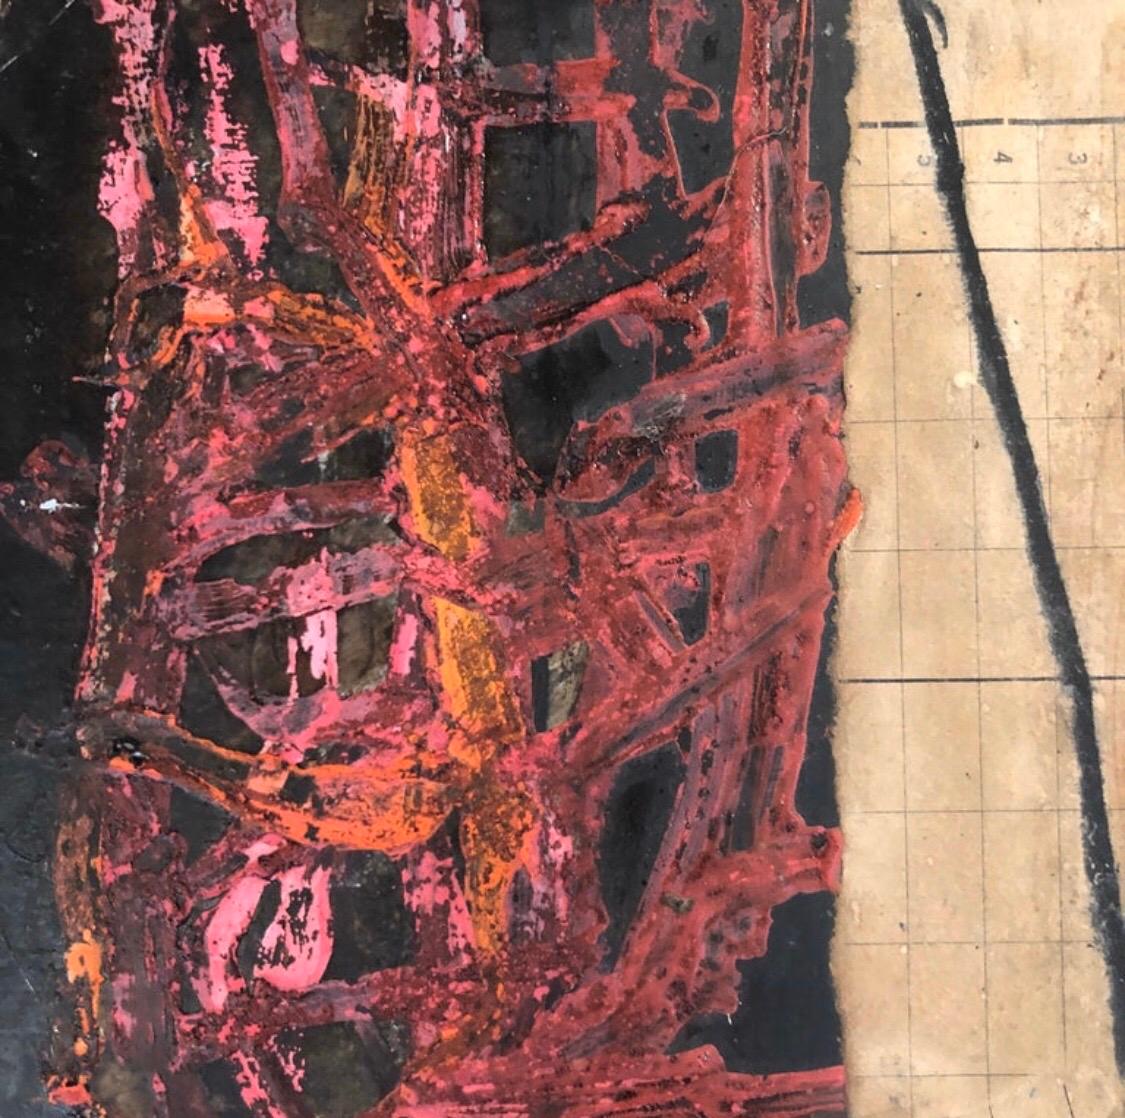 IInes Hildur, deutscher Künstler, Gemälde „Noir et Rouge“ in Mischtechnik auf Holz (Abstrakt), Mixed Media Art, von Hildur Ines